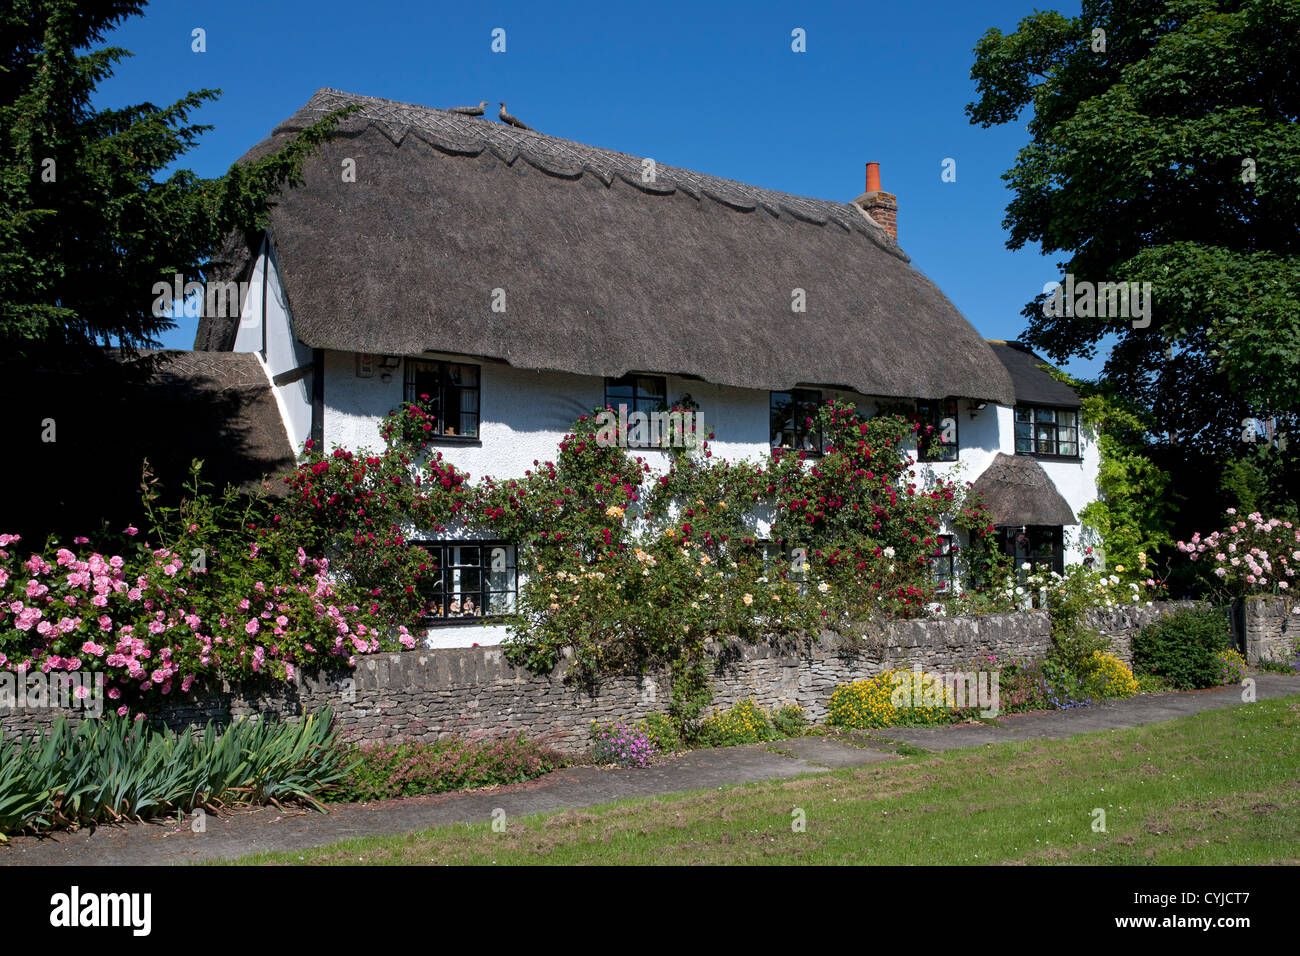 Bastante típicos inglés casita con techo de paja cubierto en el verano de rosas, Oxford, Inglaterra Foto de stock